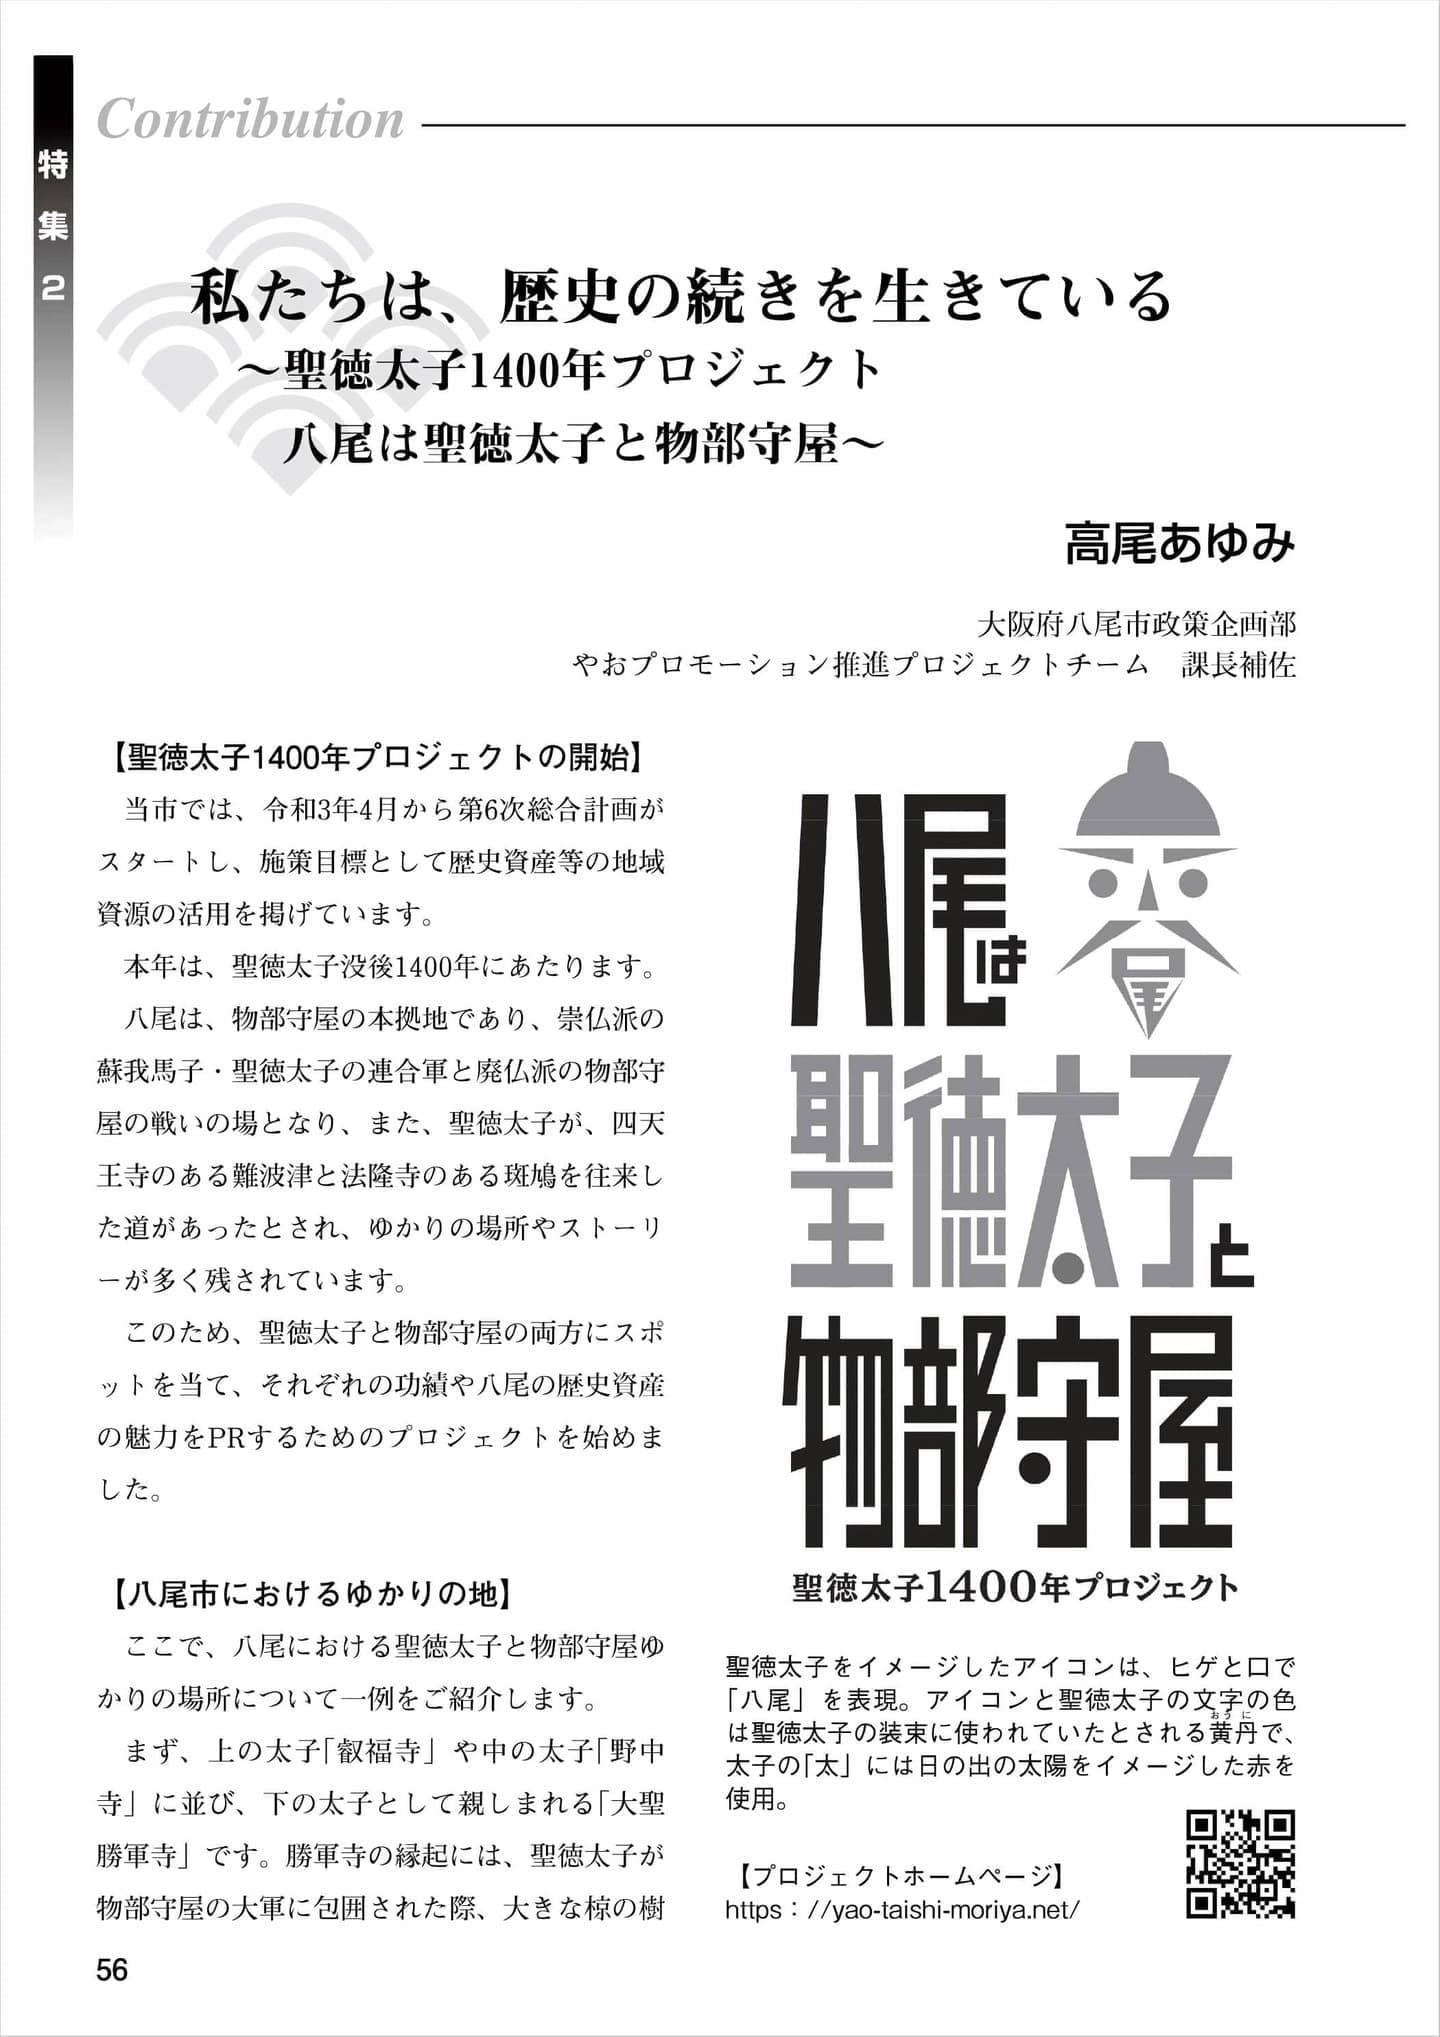 一般財団法人　大阪地域振興調査会の機関誌「融　vol.29 2021.7」に寄稿しました